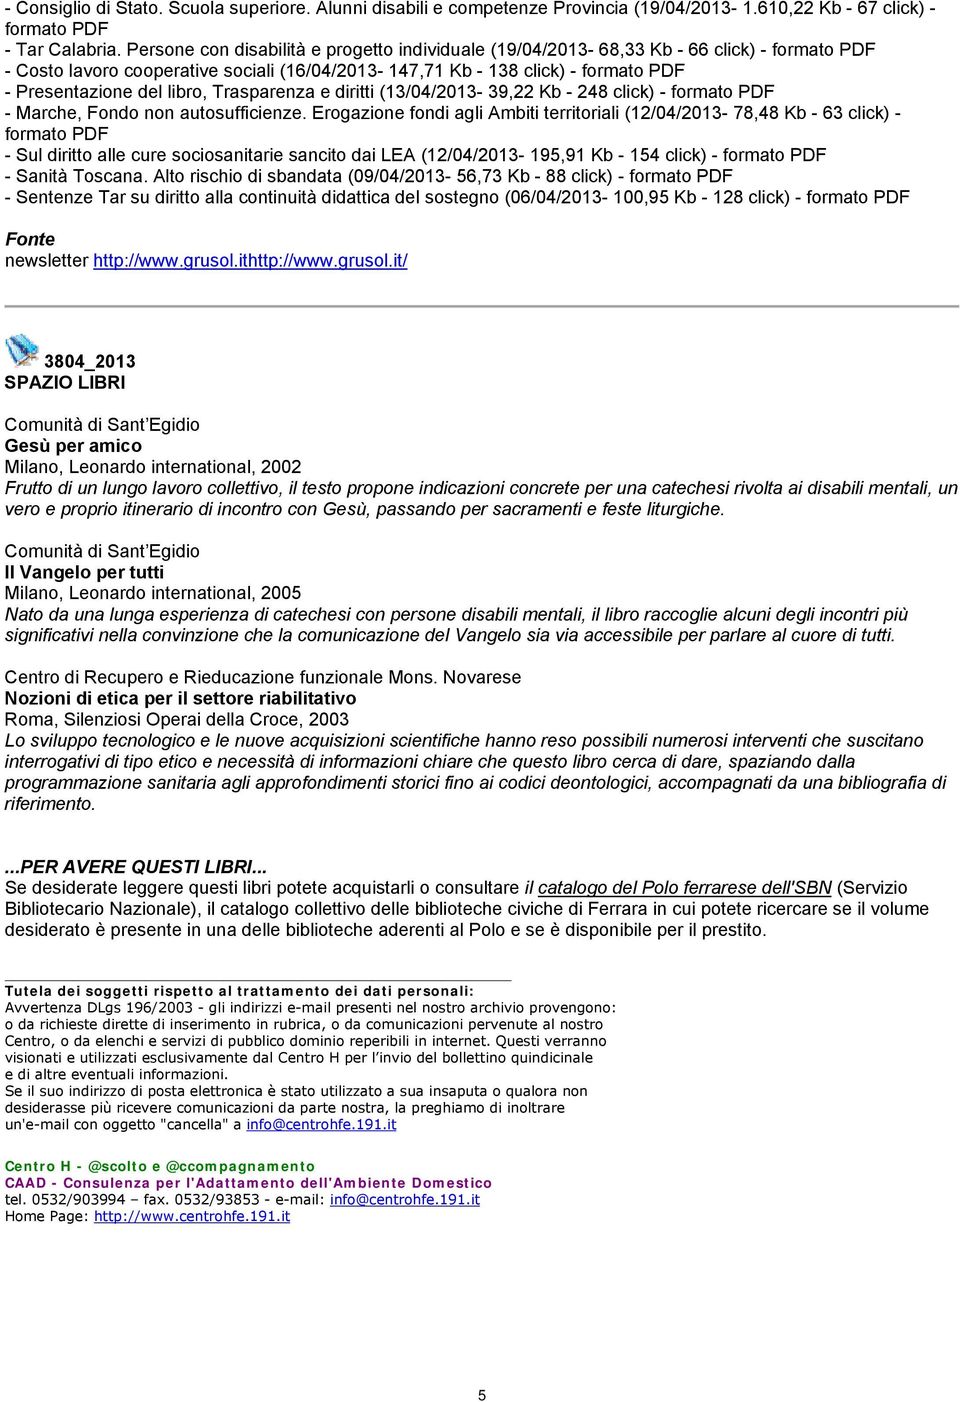 diritti (13/04/2013-39,22 Kb - 248 click) - - Marche, Fondo non autosufficienze.